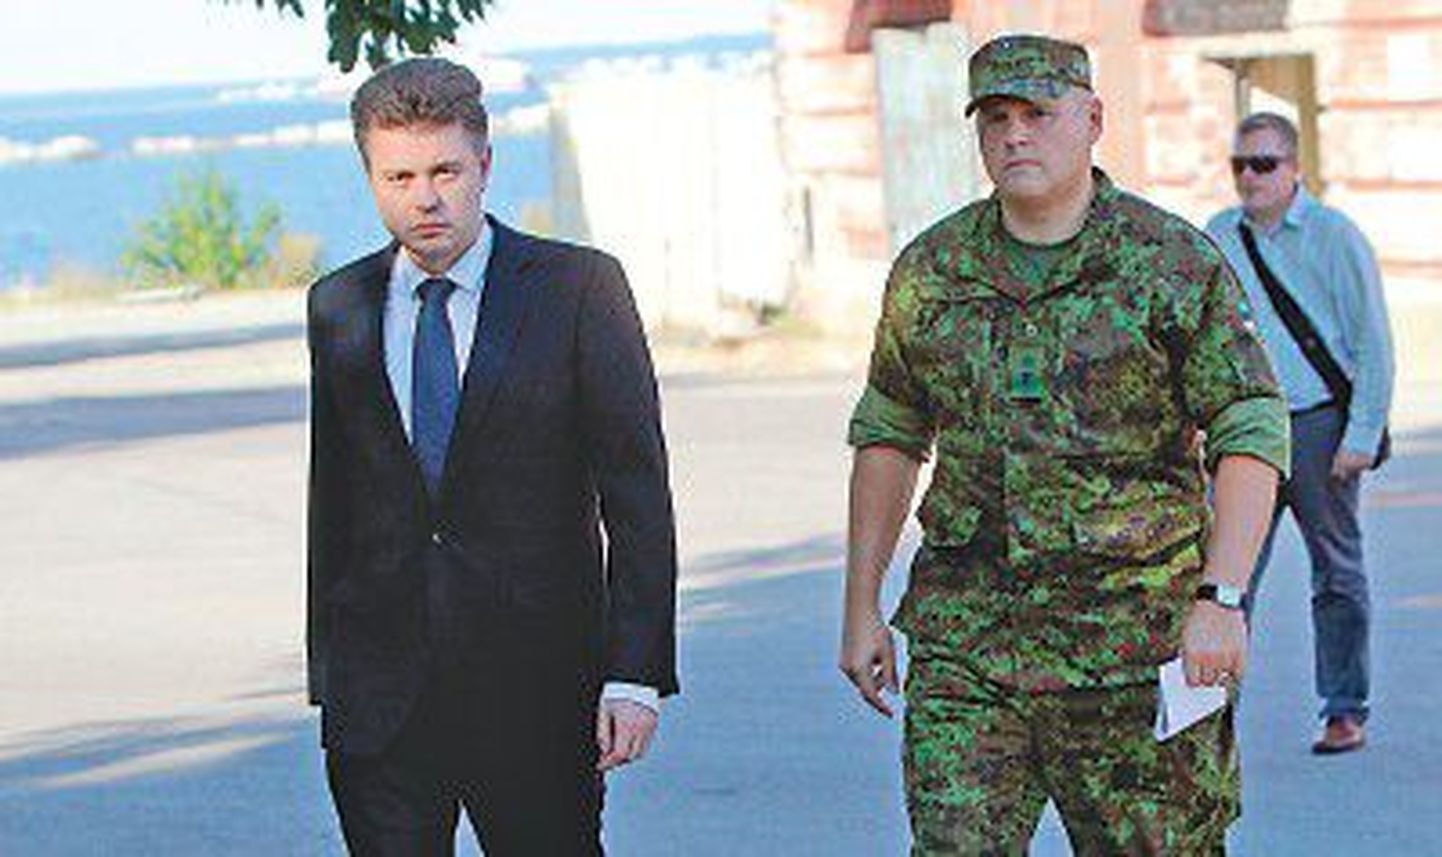 Министр обороны Урмас Рейнсалу (слева) и командующий Силами обороны бригадный генерал Рихо Террас.